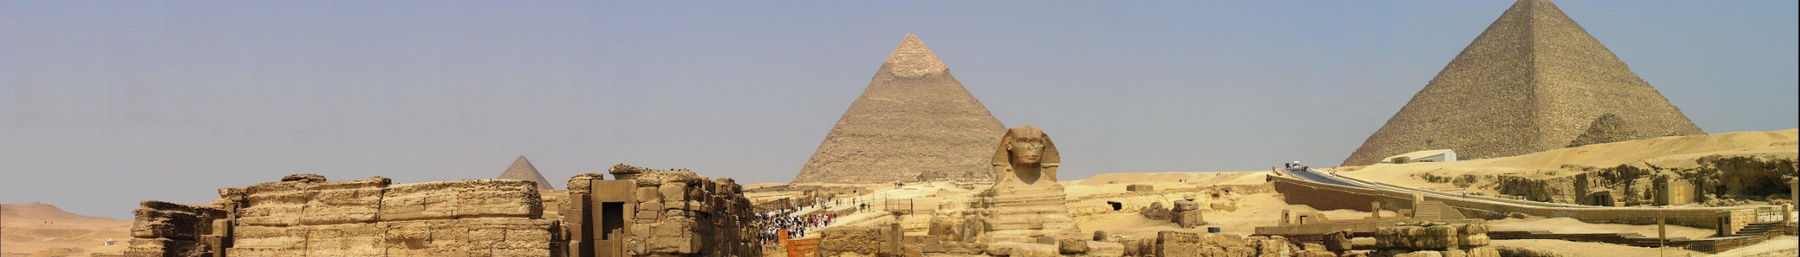 Giza banner.jpg